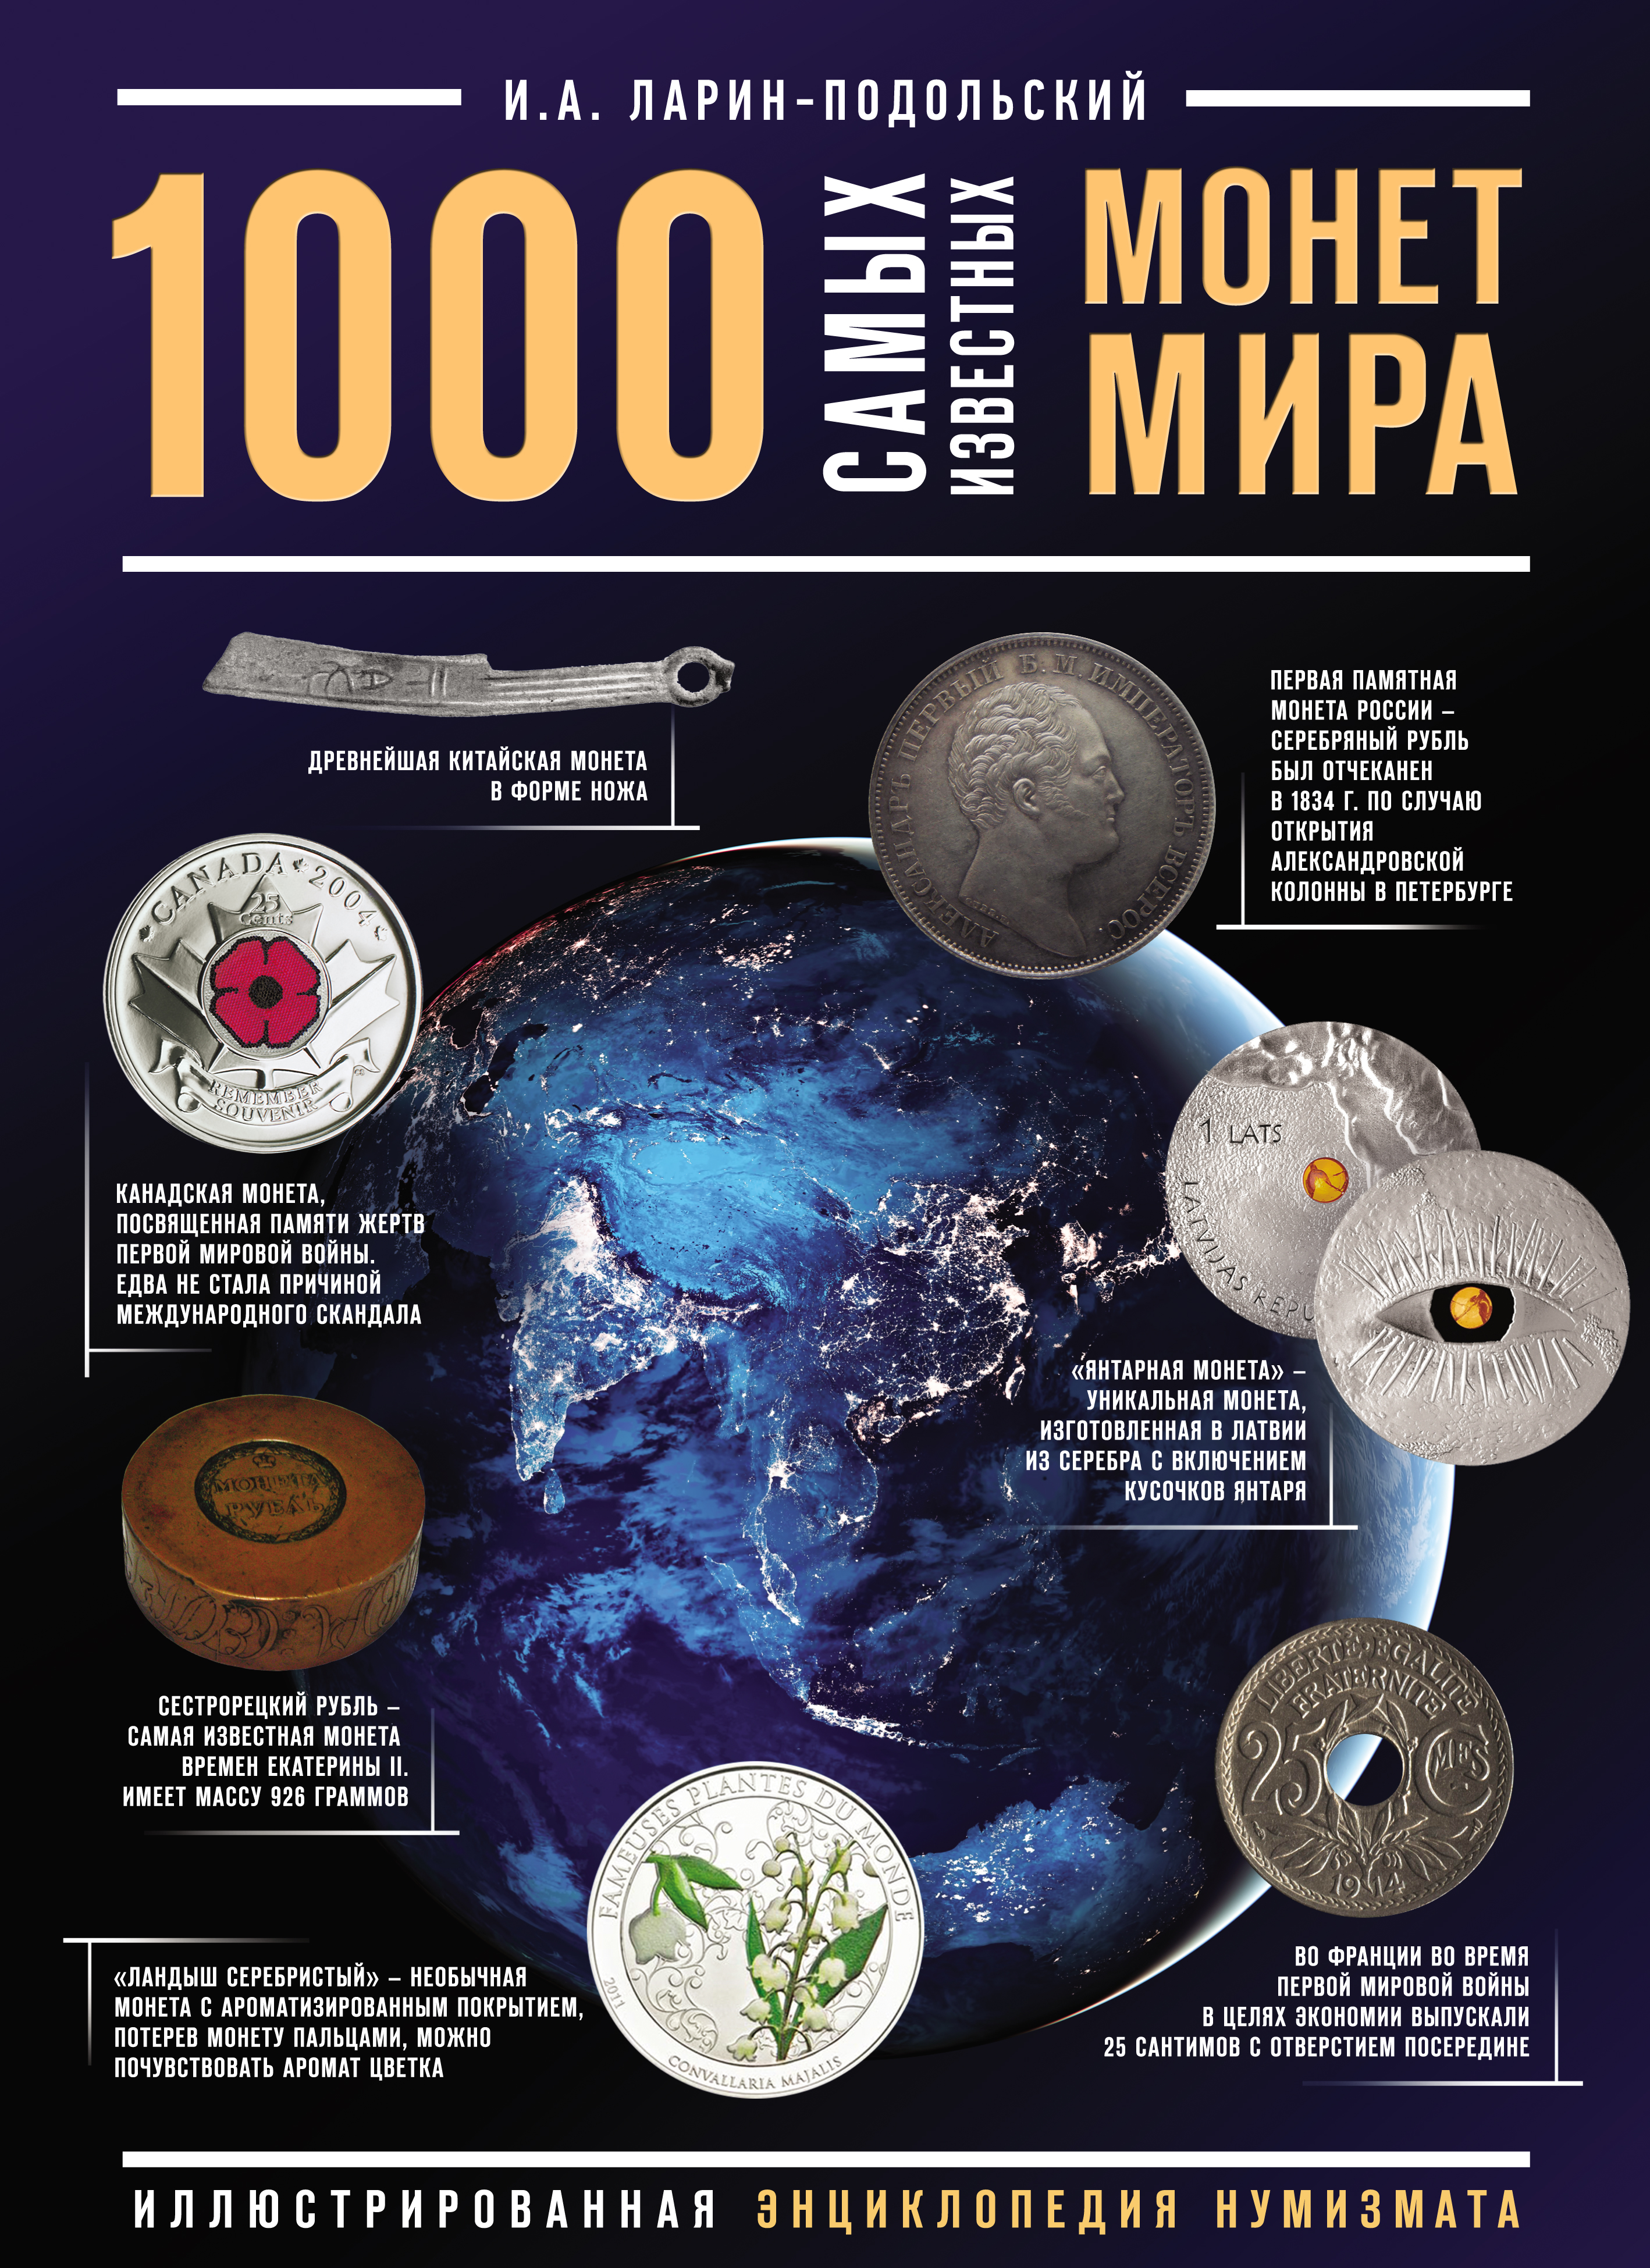 1000самых известных монет в мире